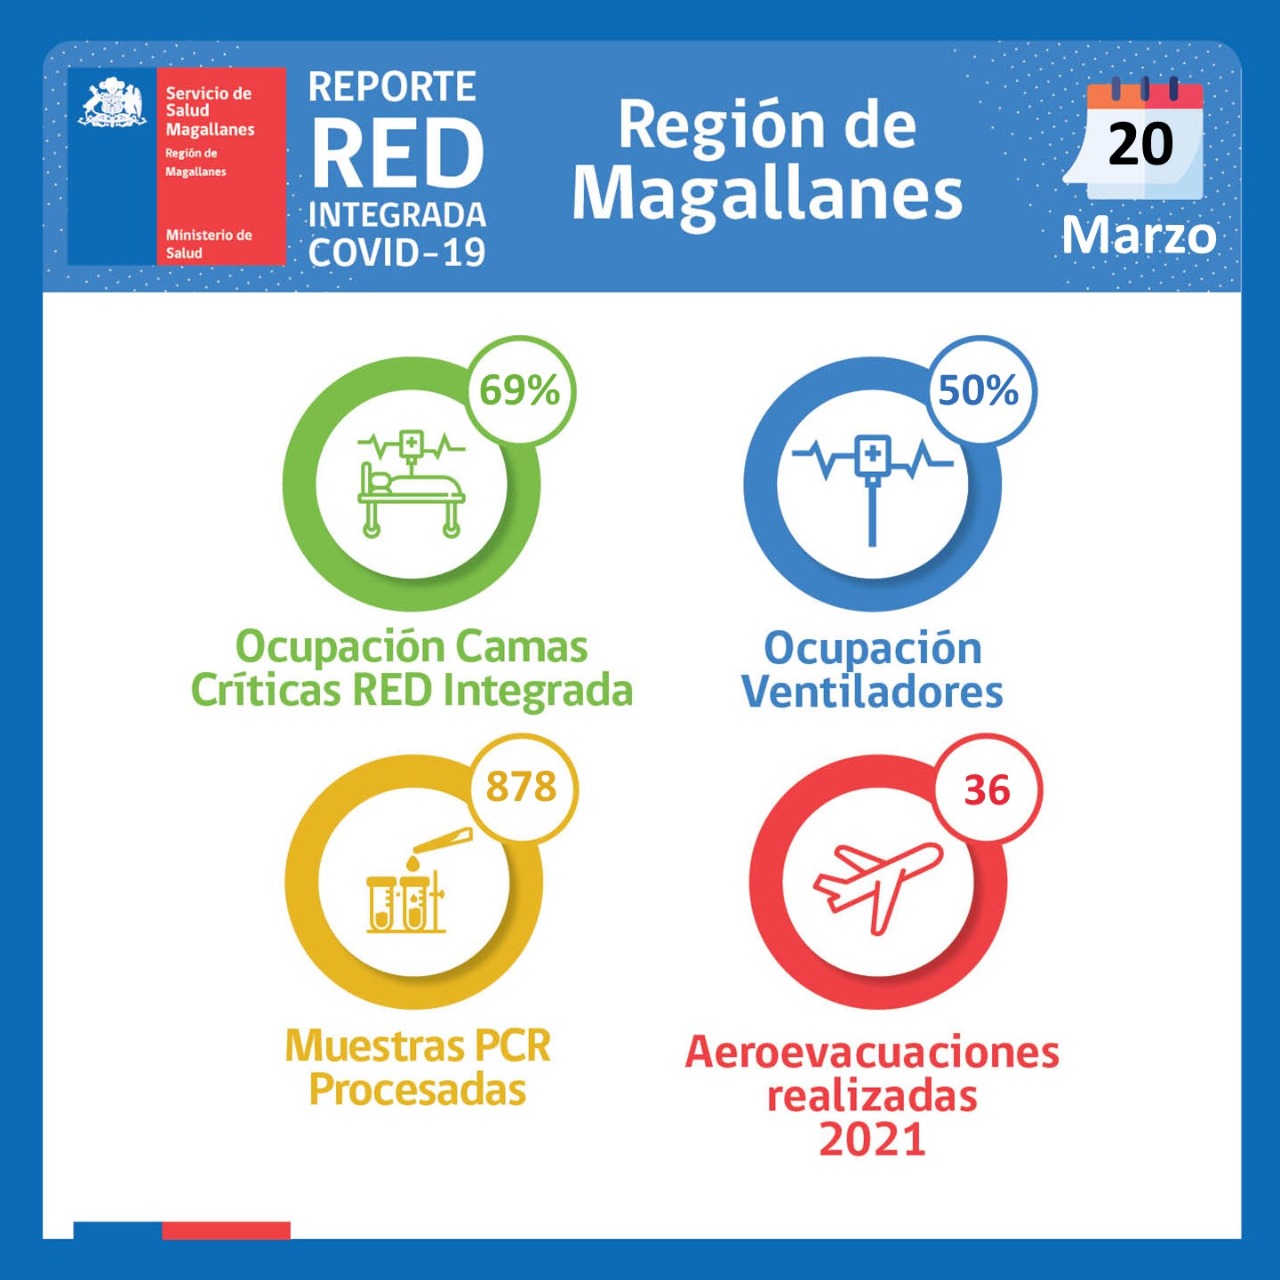 Estado del Hospital Clínico y de la Red Integrada Covid-19 en Magallanes, al sábado 20 de marzo